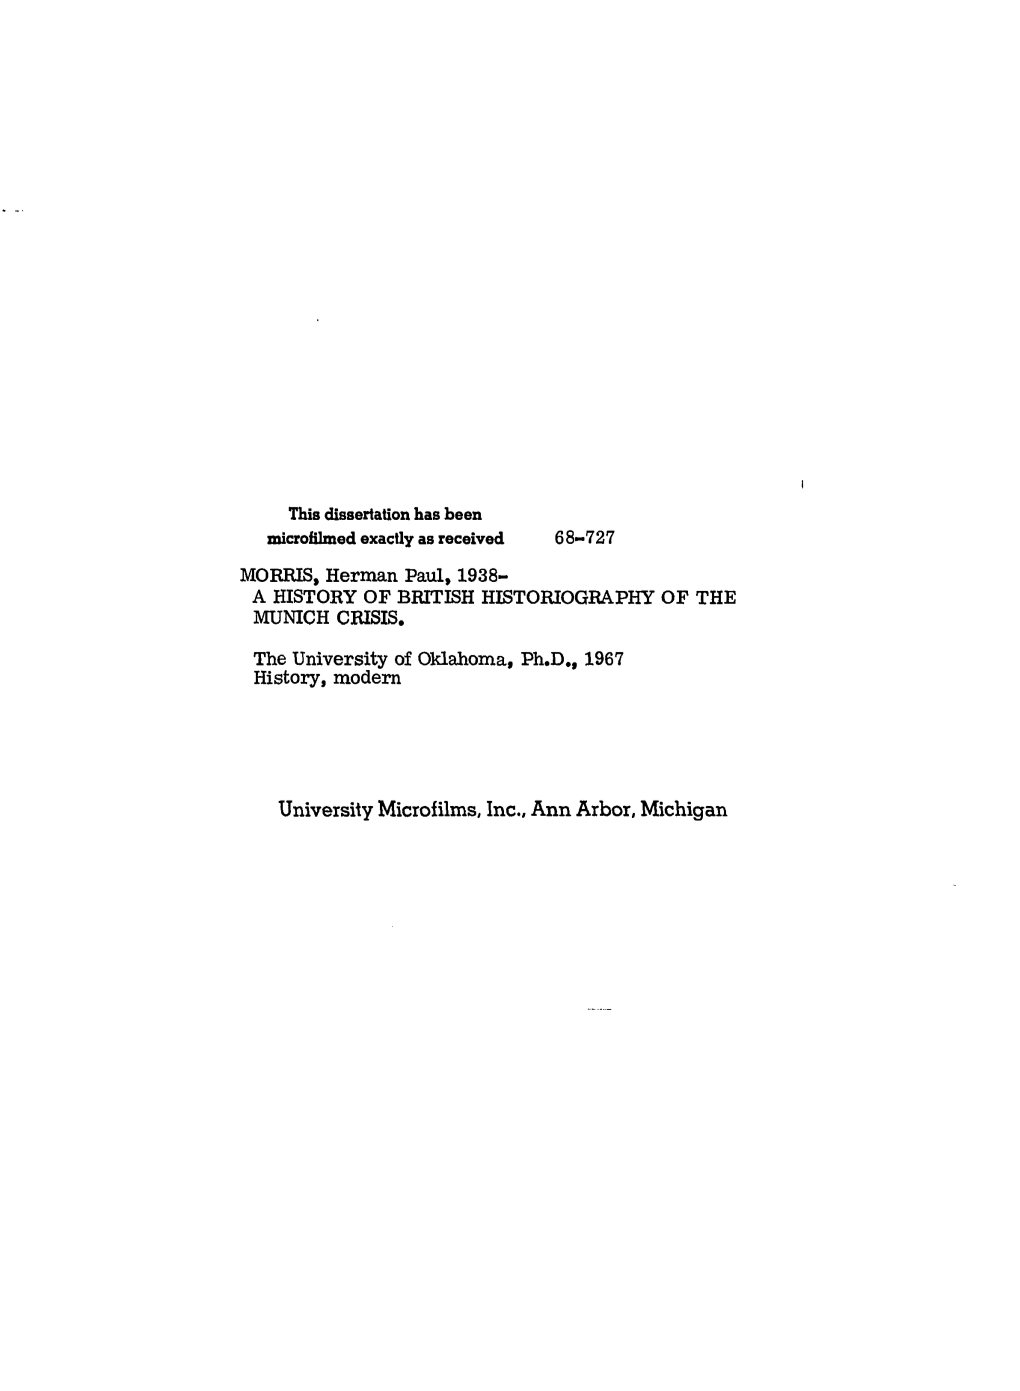 University Microfilms, Inc.. Ann Arbor, Michigan Herman Paul Morris 1968